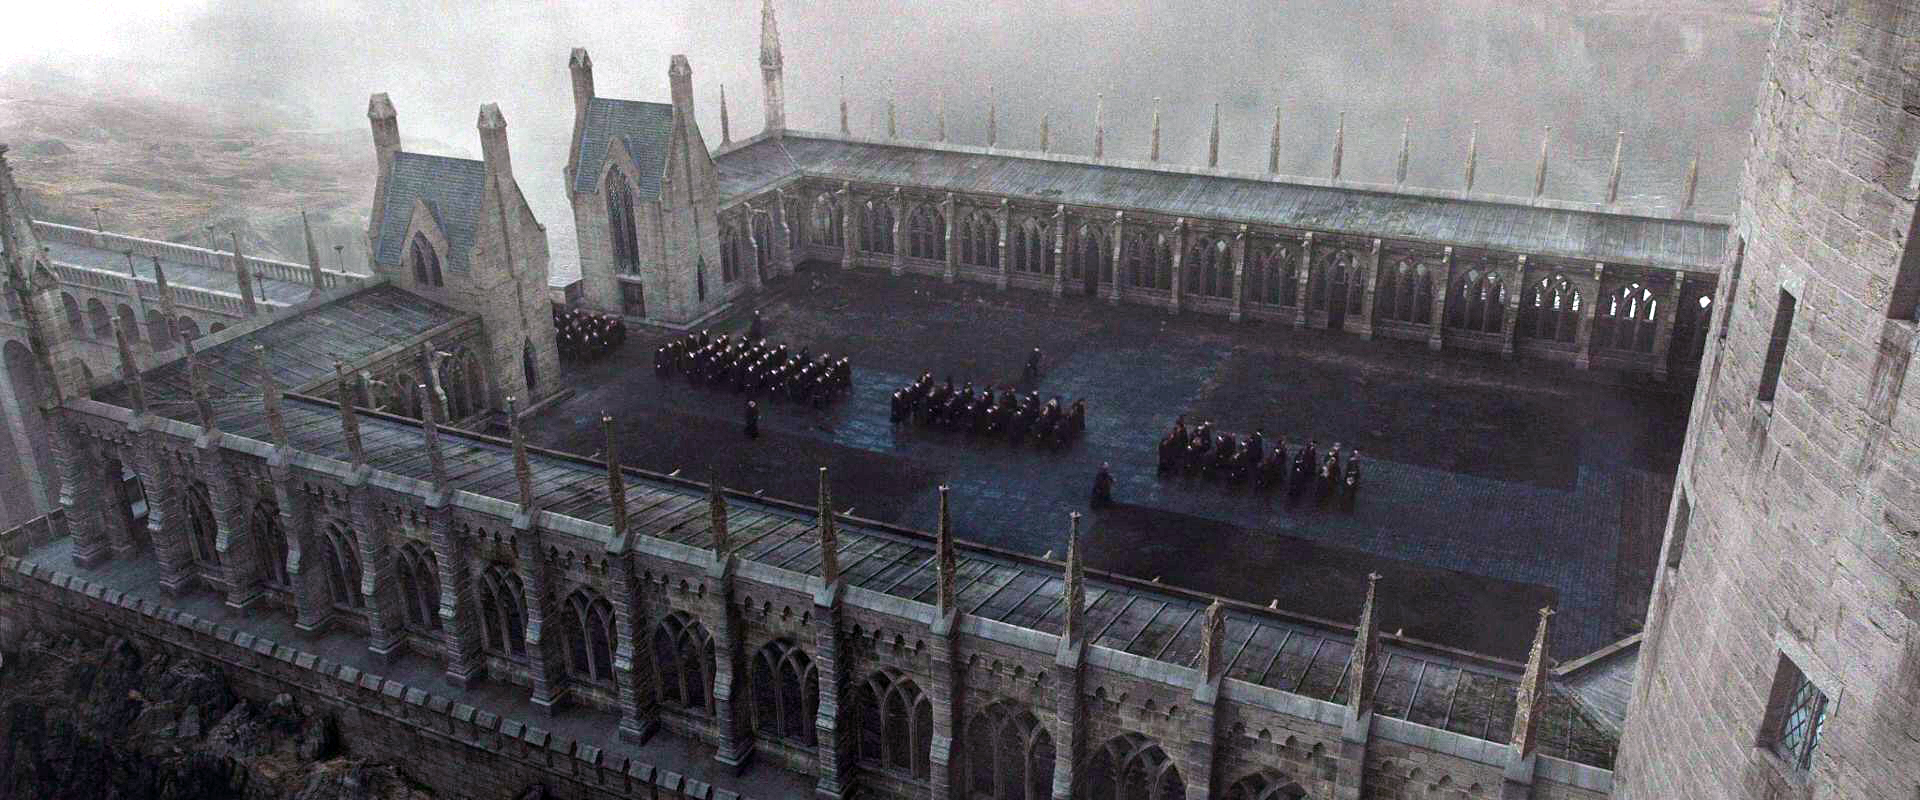 Viaduct Courtyard | Harry Potter Wiki | Fandom